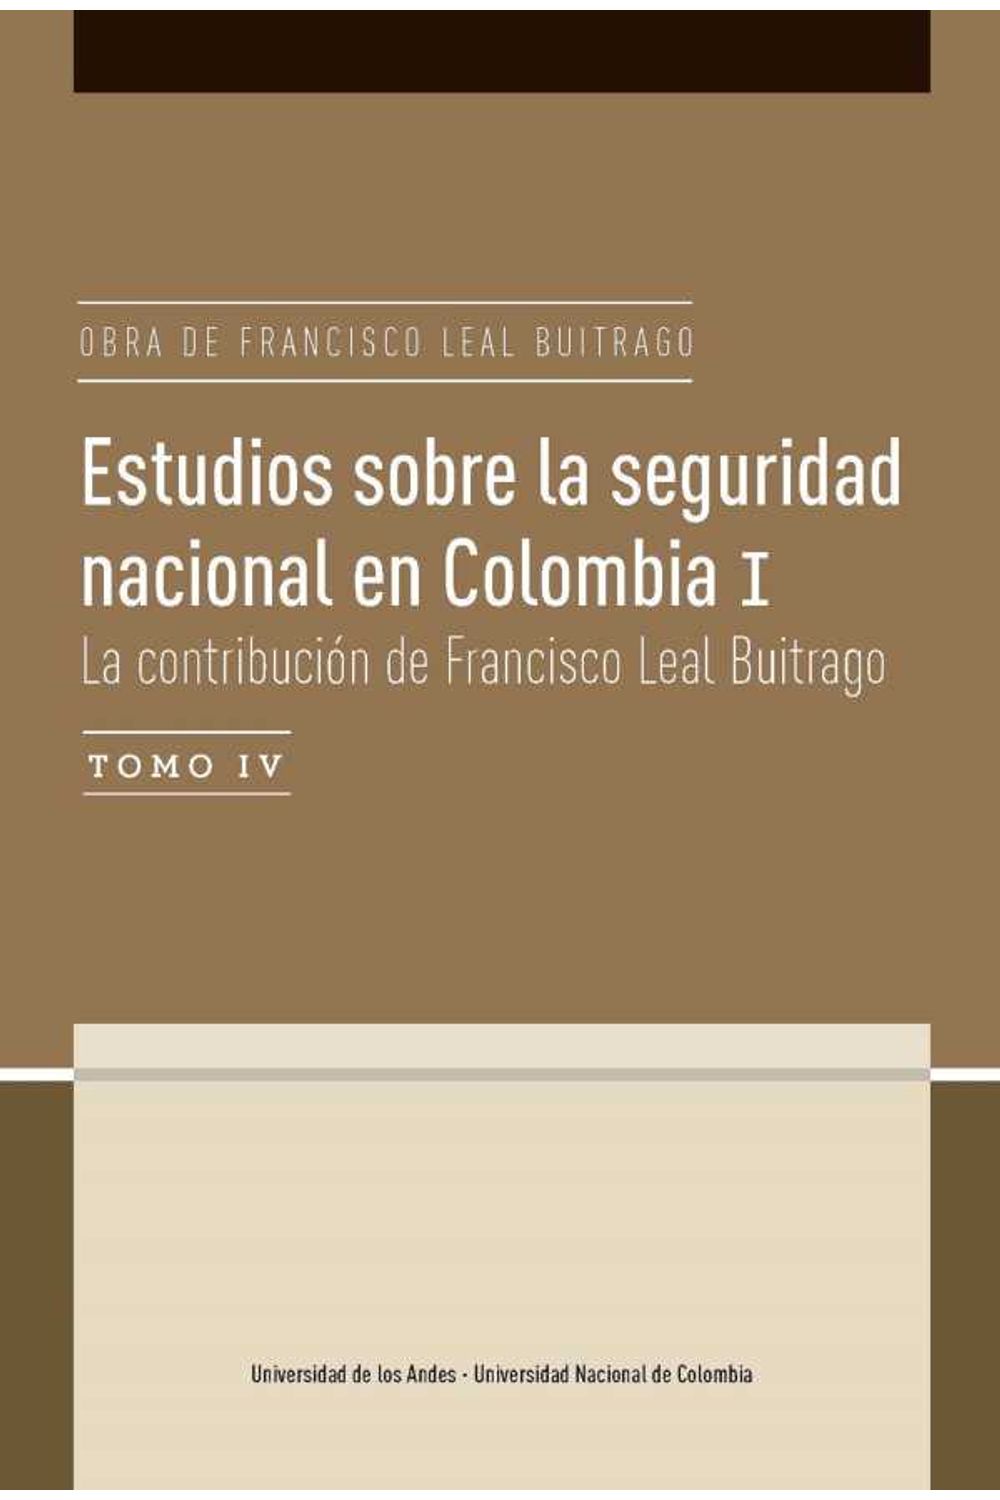 bw-estudios-sobre-la-seguridad-nacional-en-colombia-i-tomo-iv-u-de-los-andes-9789587746624